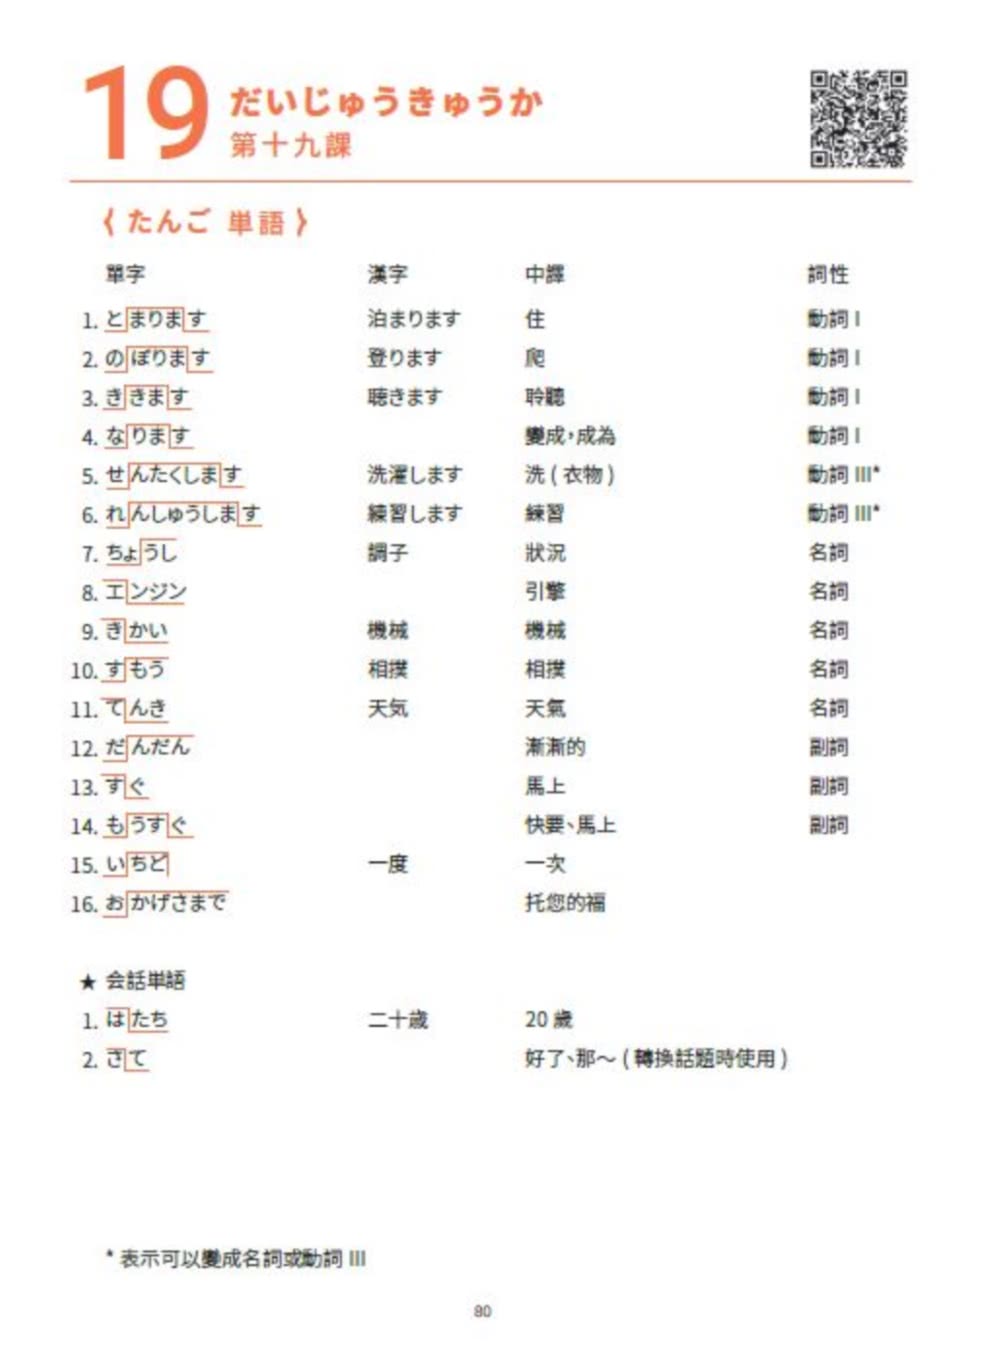 大家一起學習日文吧！王可樂日語初級直達車2：詳盡文法、大量練習題、豐富附錄